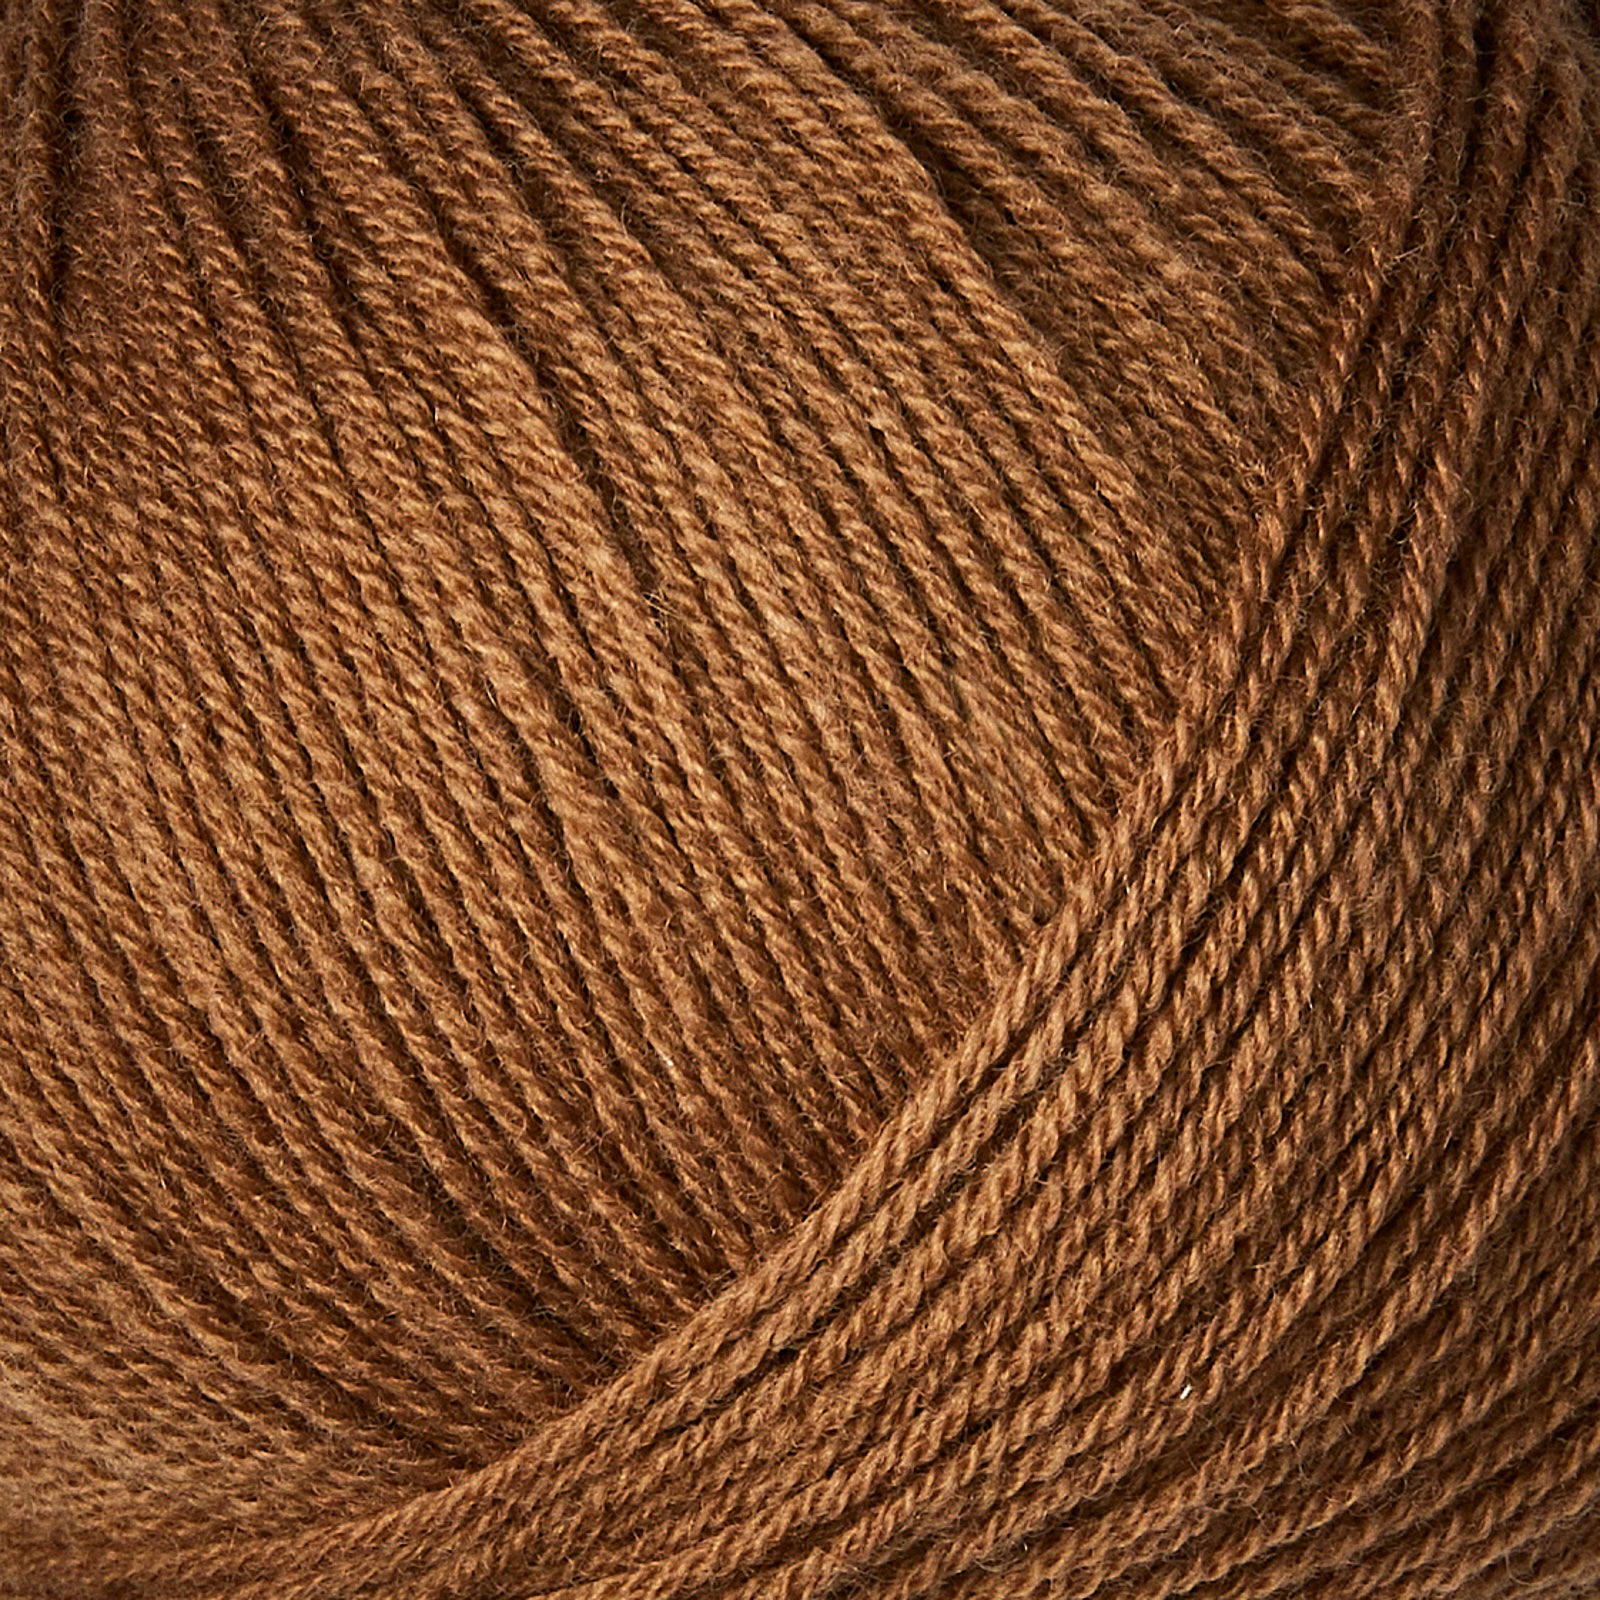 Knitting for Olive Merino - Soft Cognac